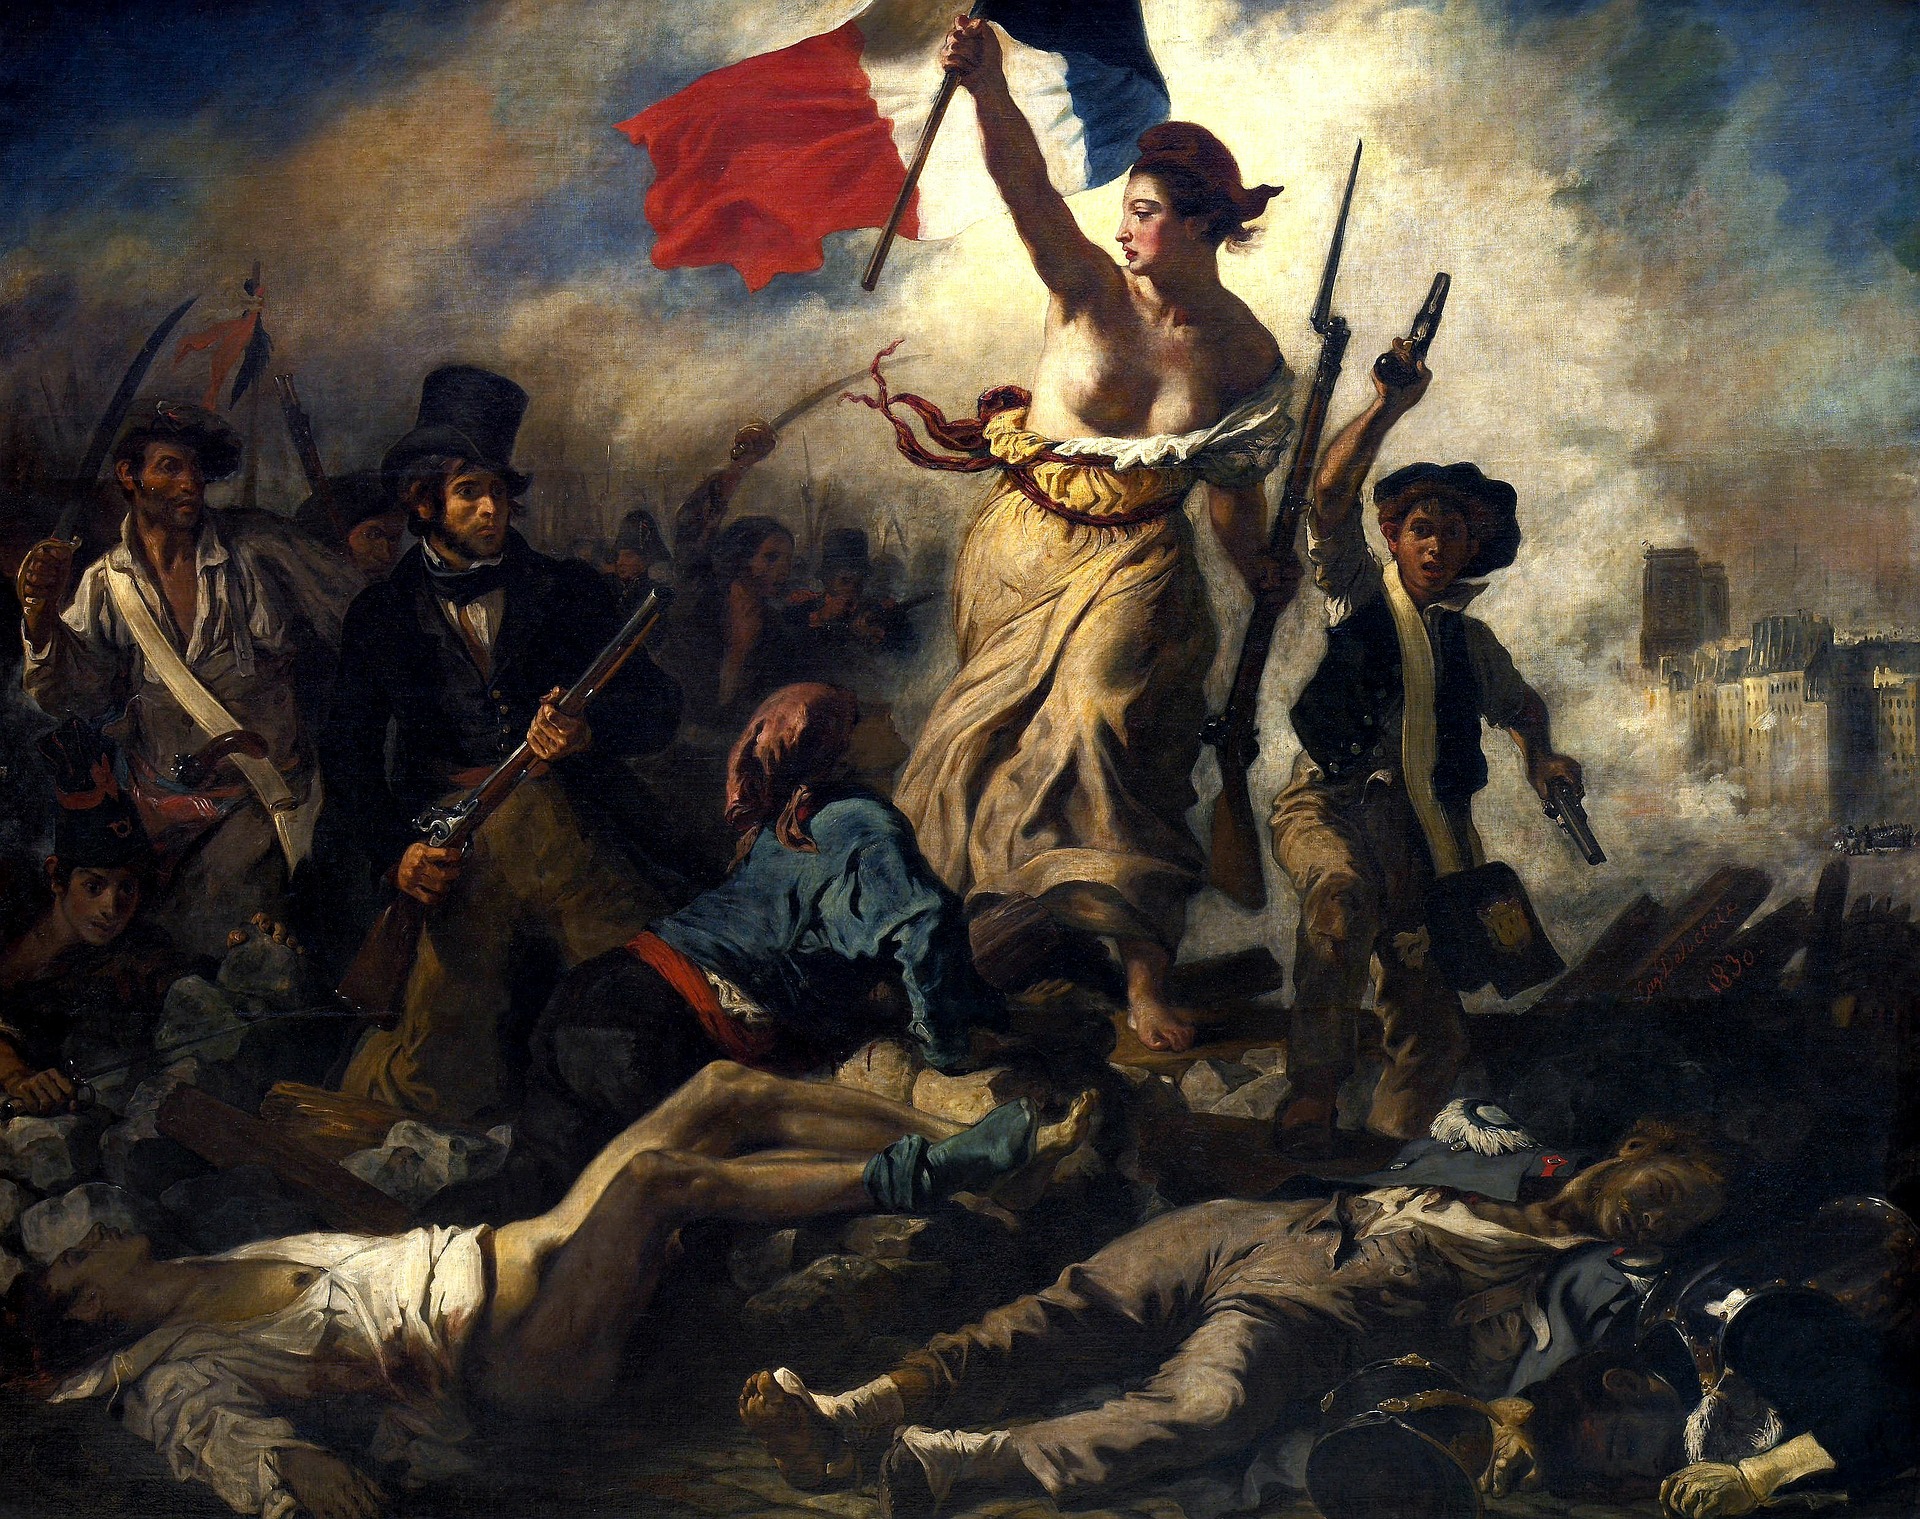 Anhänger der französischen Revolution ließen sich politische Motive stechen.